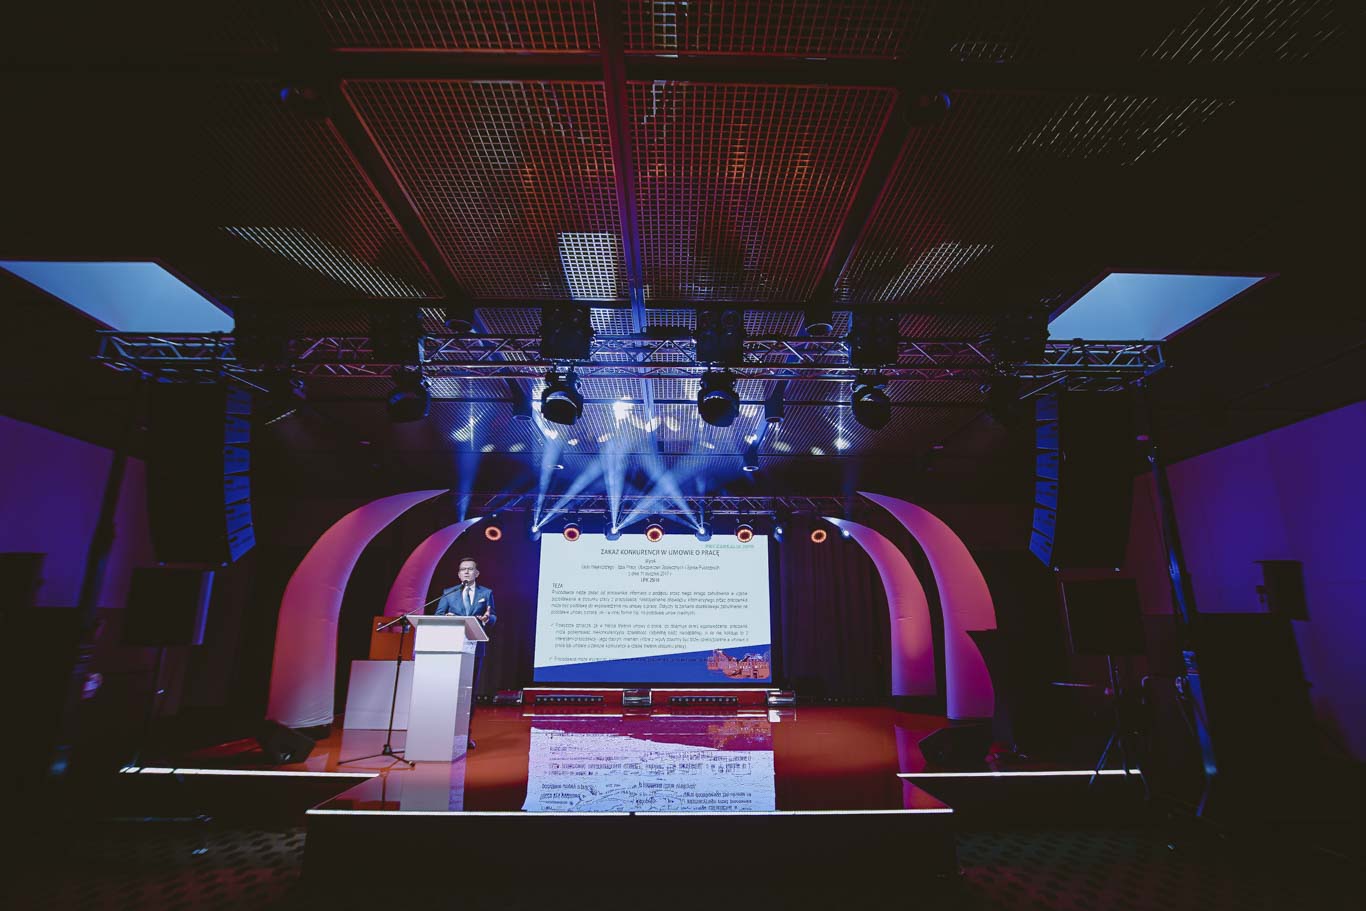 Wokas,  Mega Konferencja,  2019